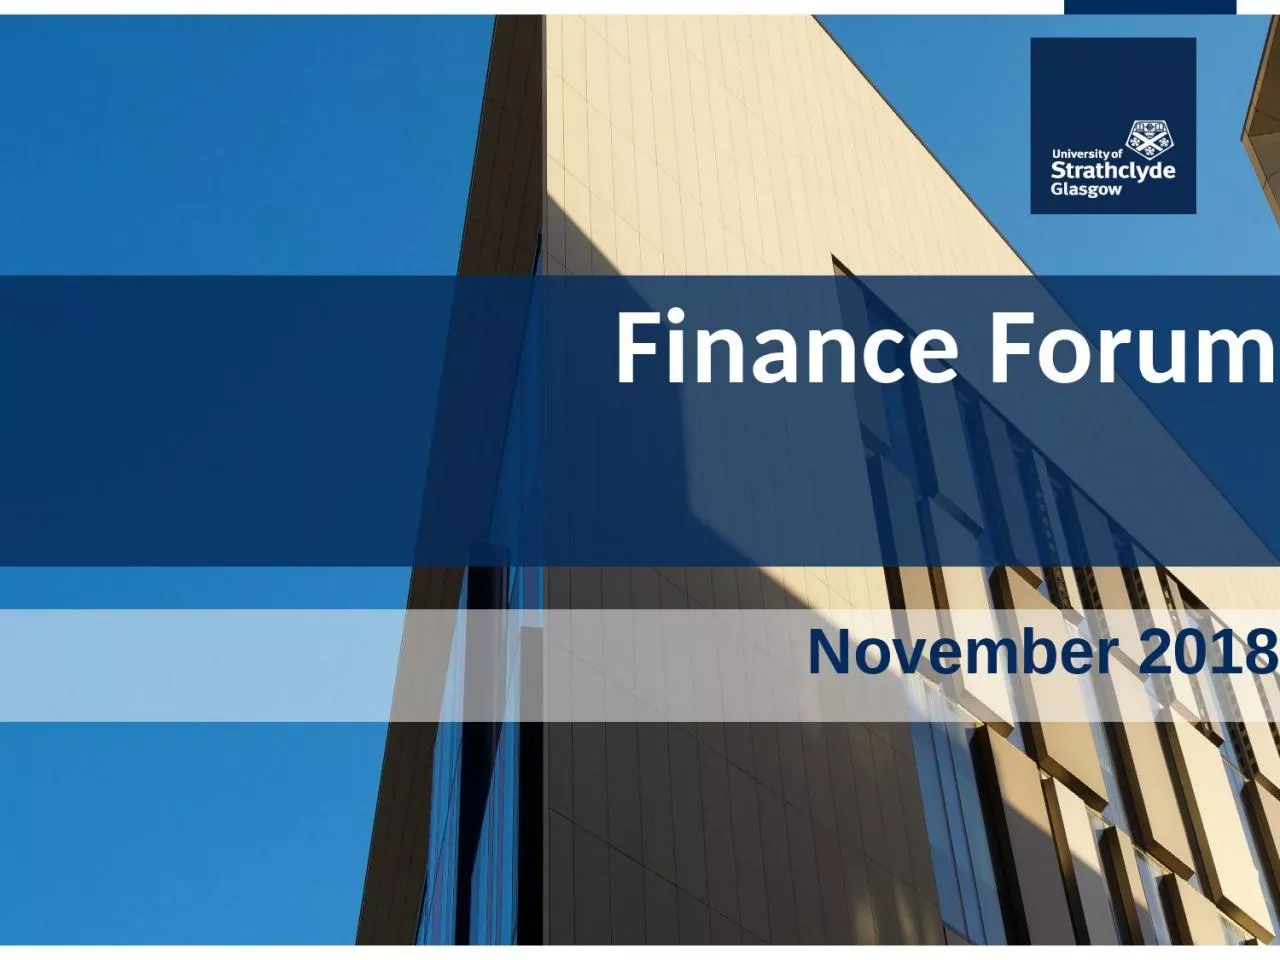 Finance Forum November 2018